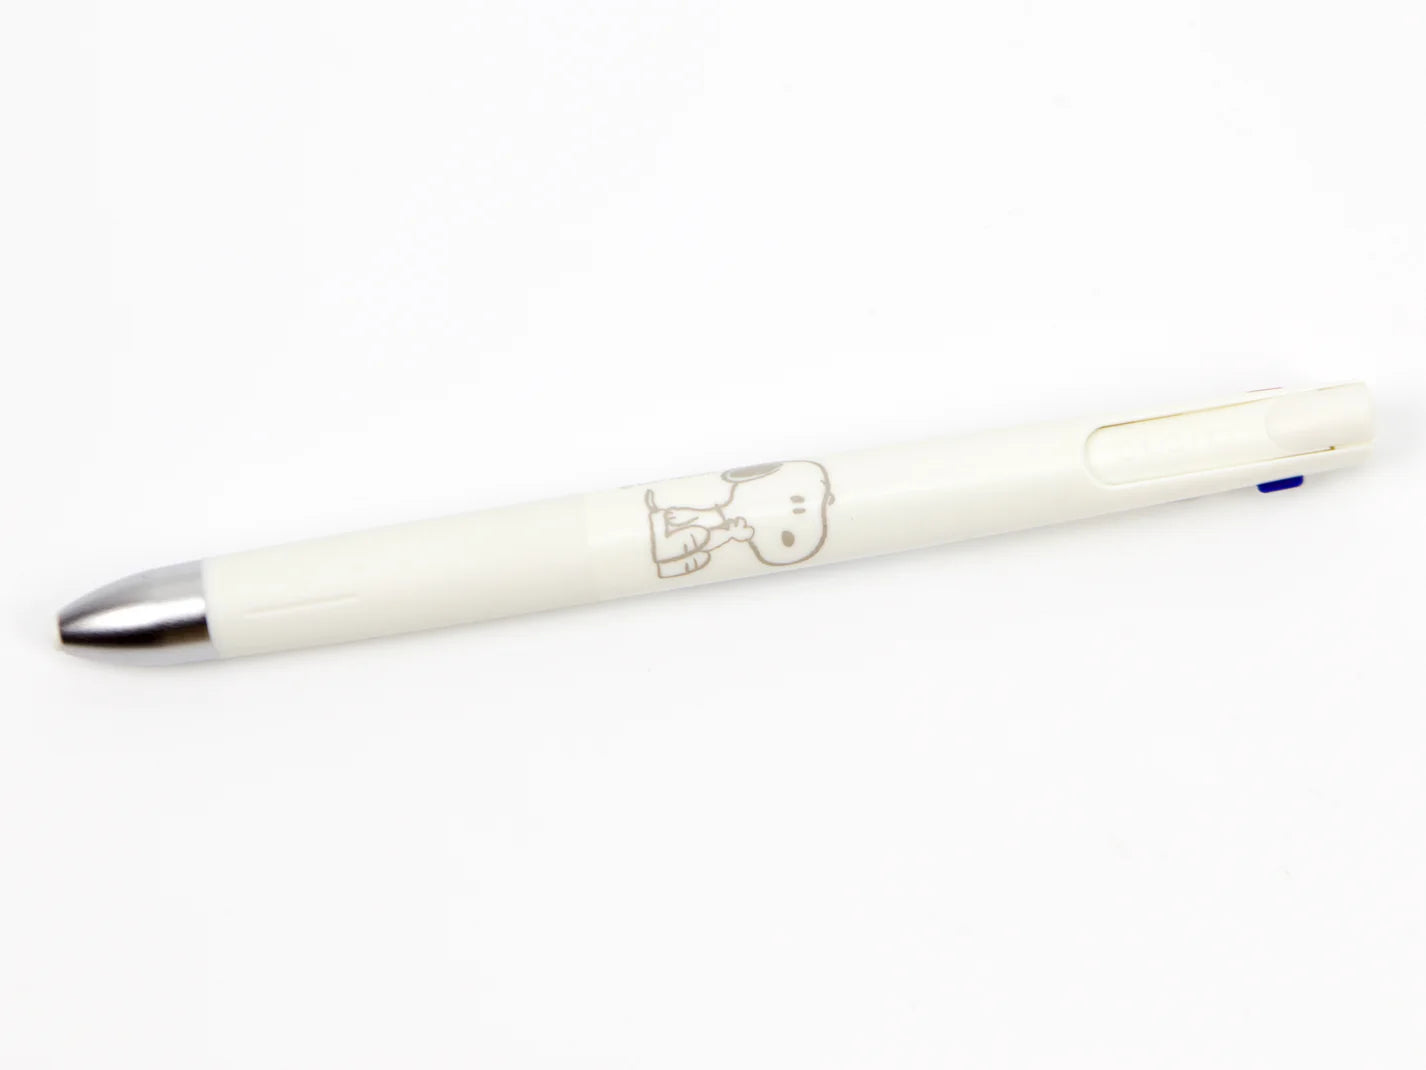 Snoopy x Zebra Blen 0.5m Multi-Color Emulsion Ballpoint Pen